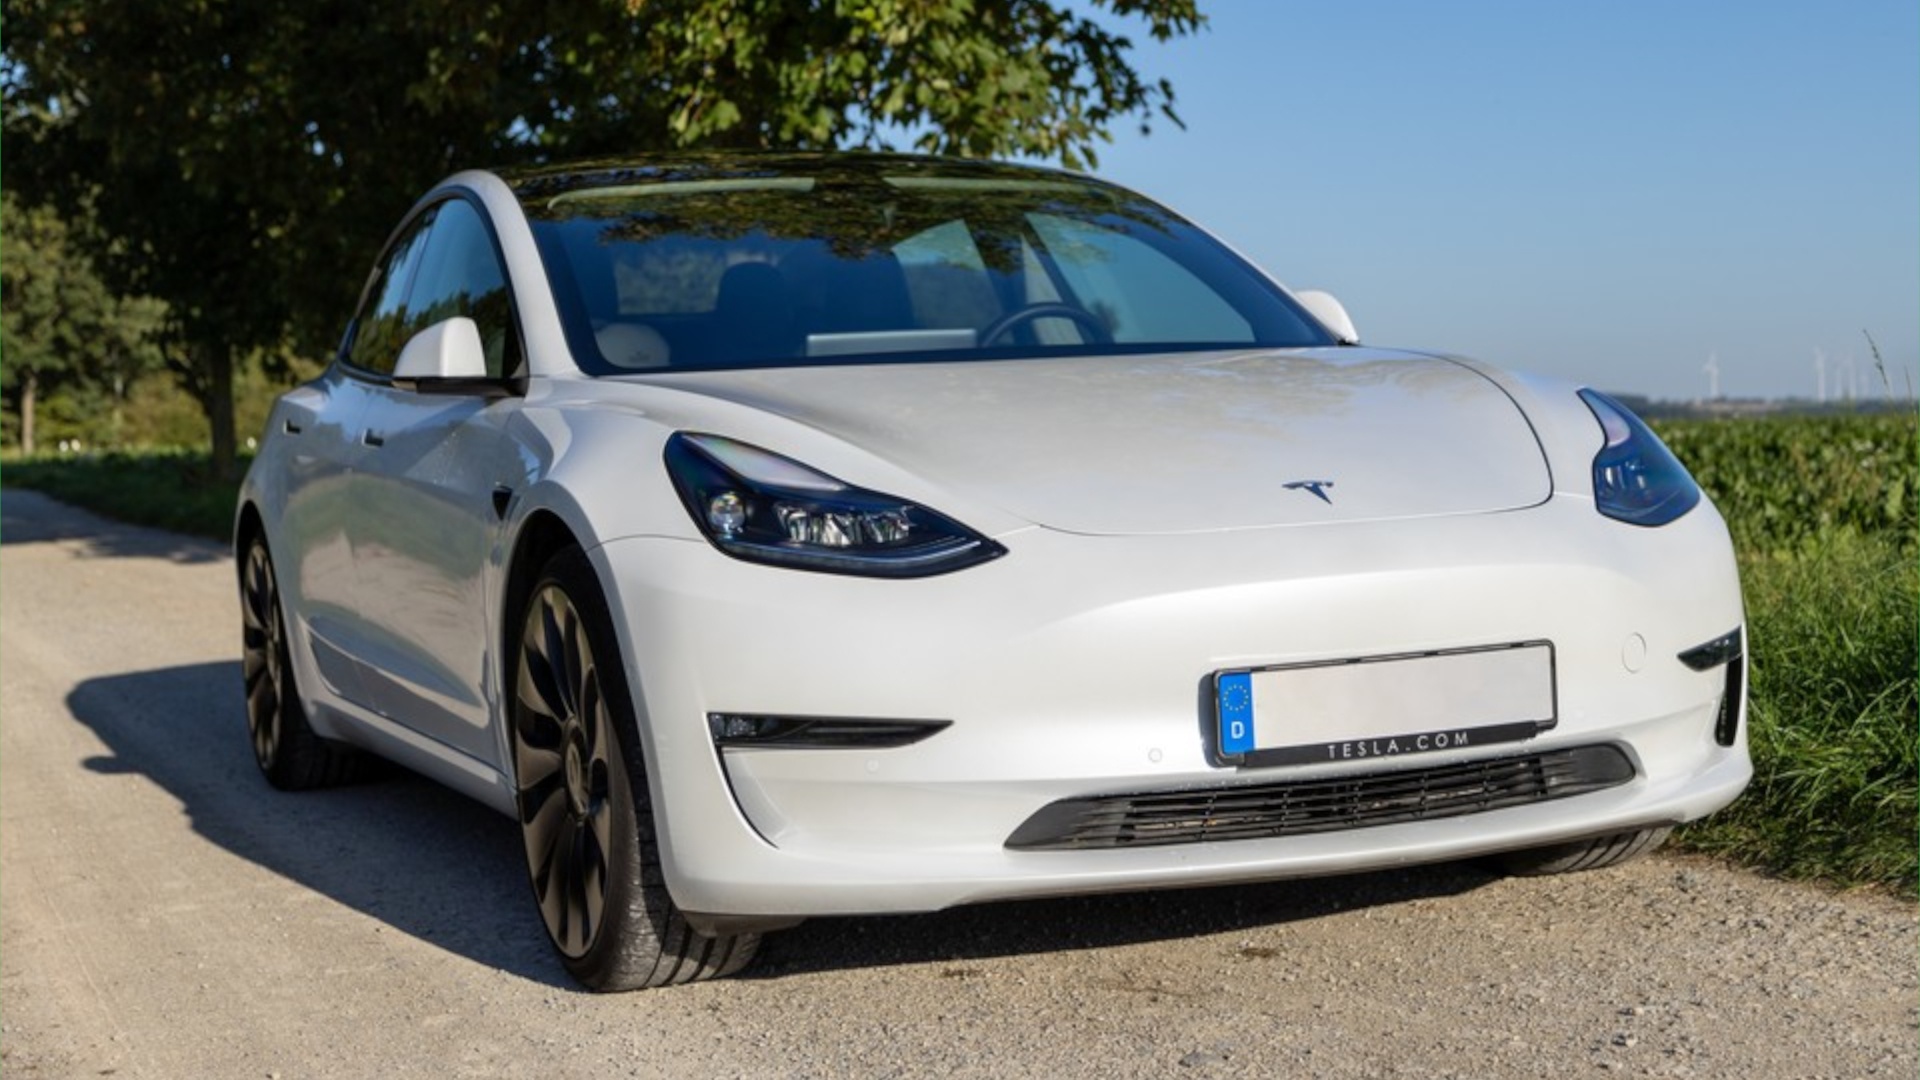 Tesla Model Y nun in Europa bestellbar: Preis für Österreich steht